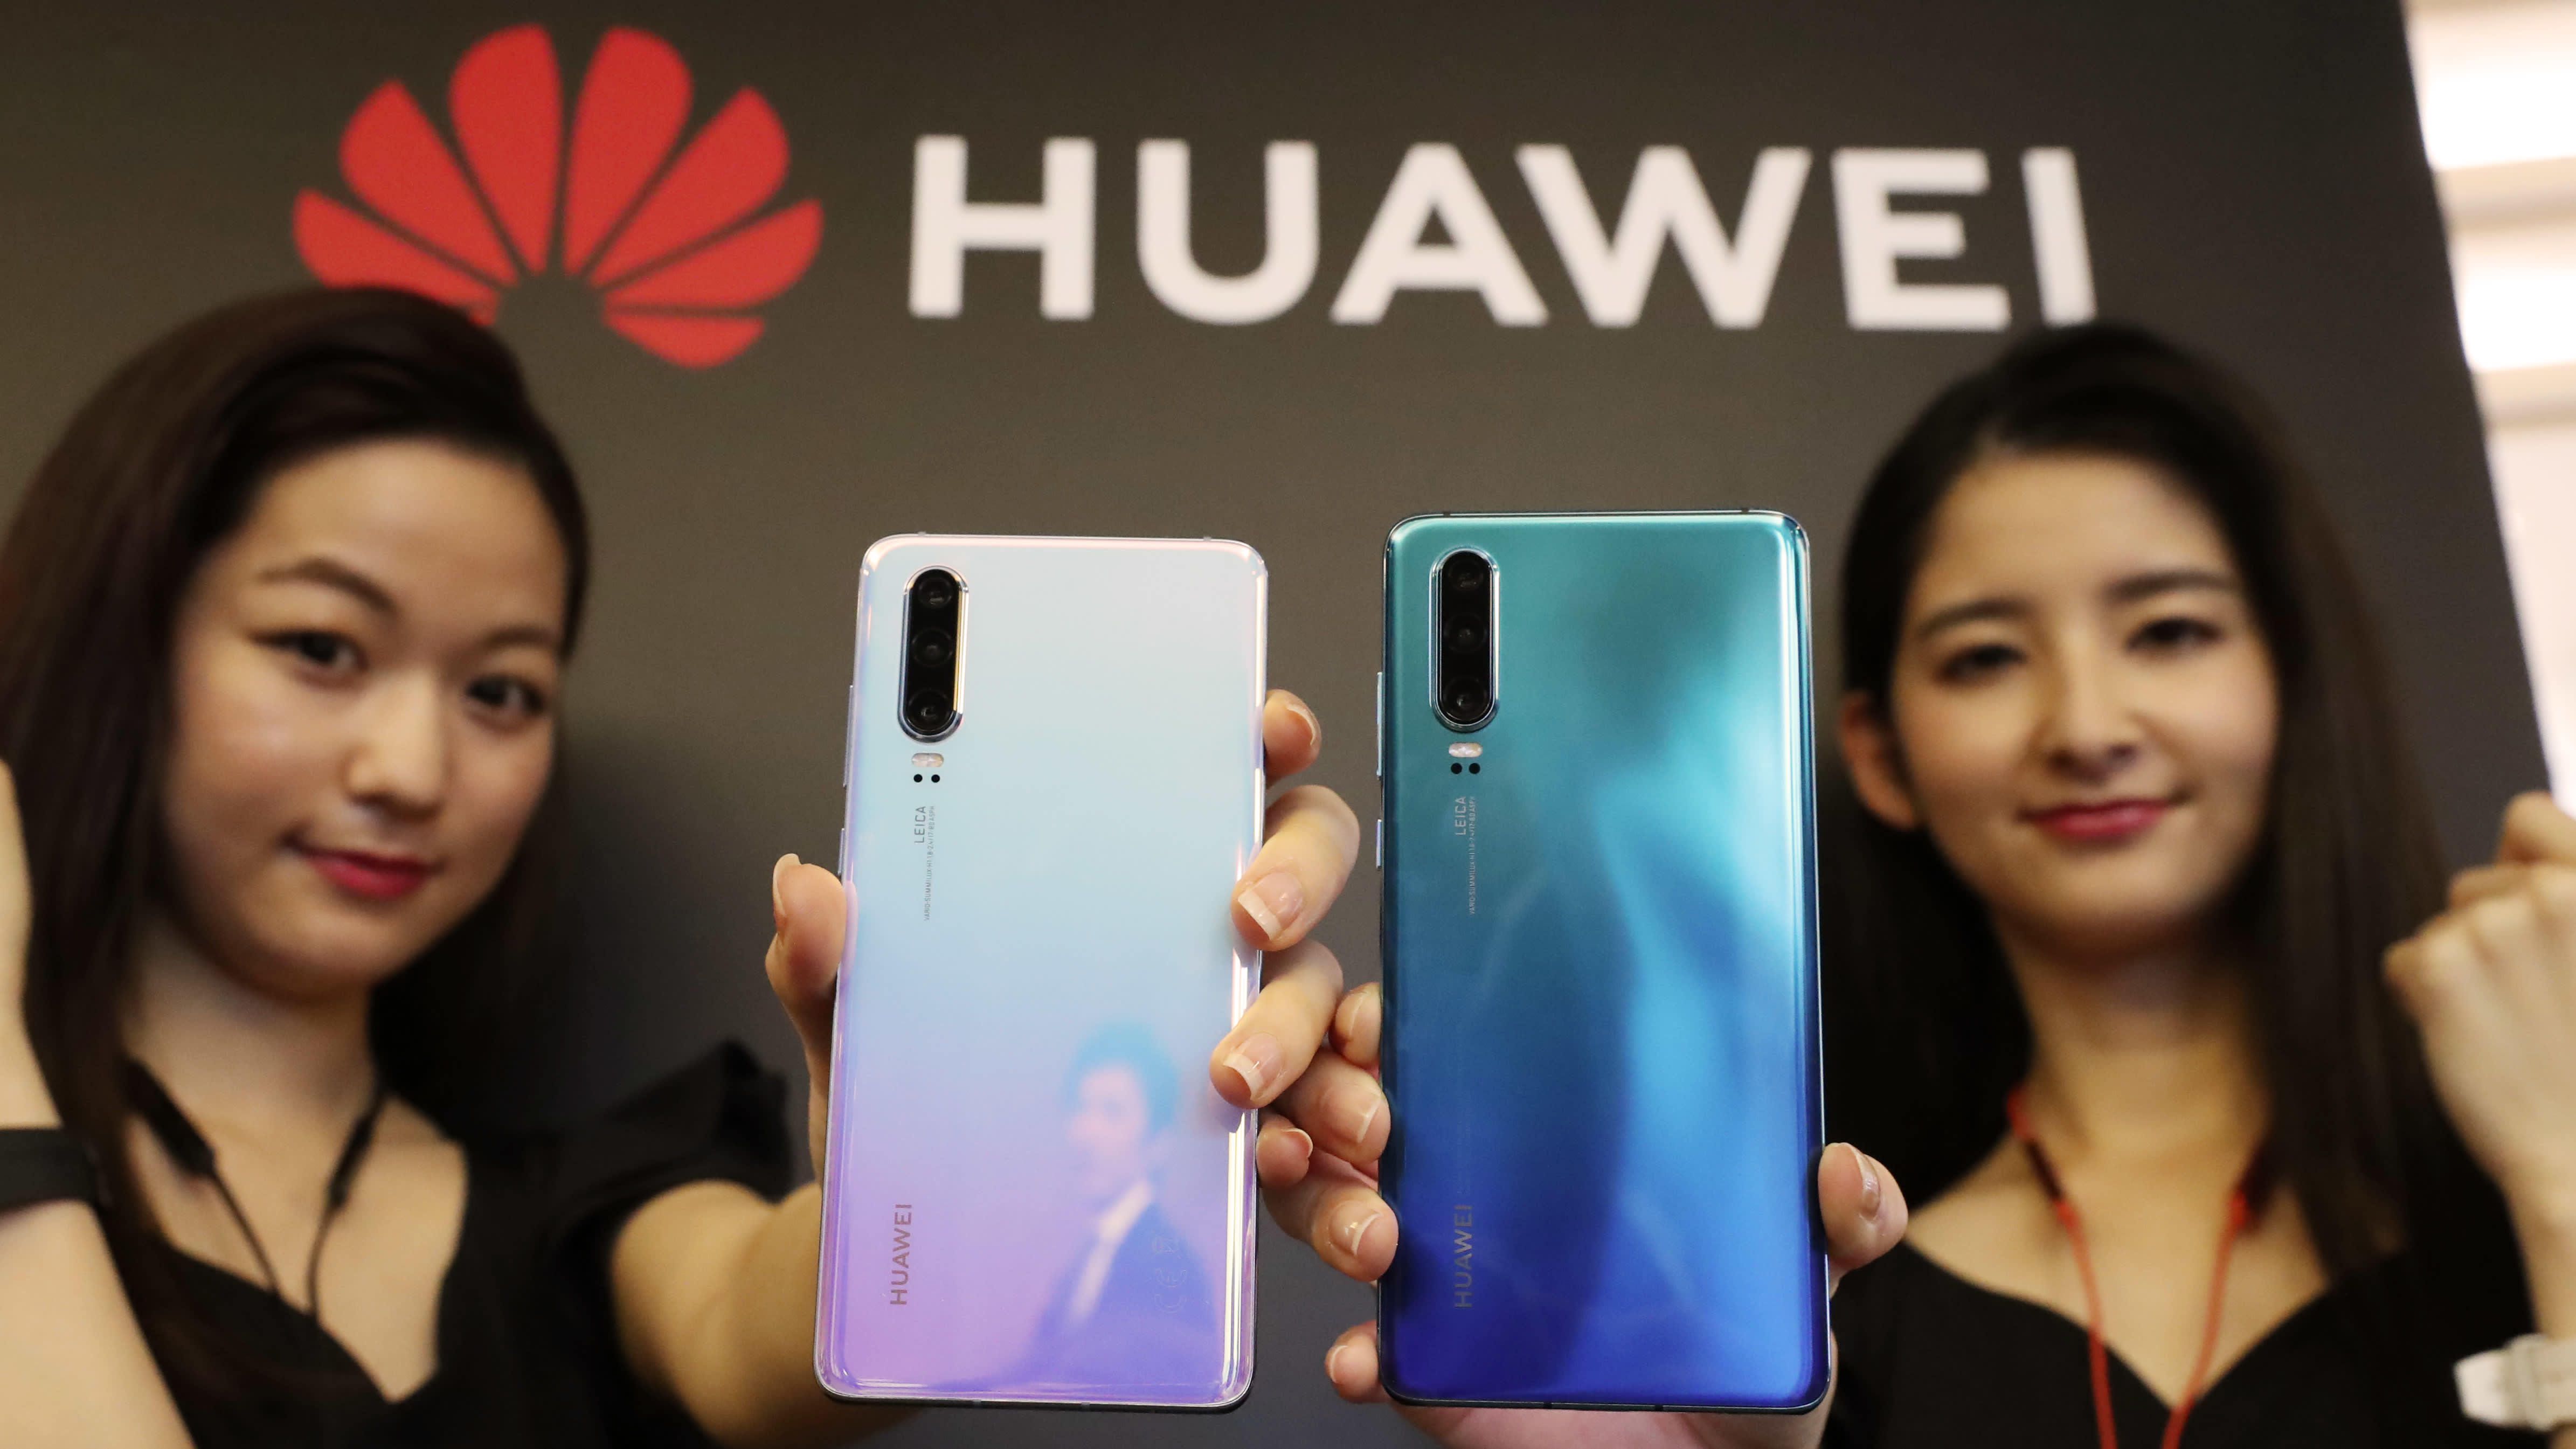 Doanh số Huawei tăng 130% tại Trung Quốc sau khi Mỹ ban hành lệnh cấm